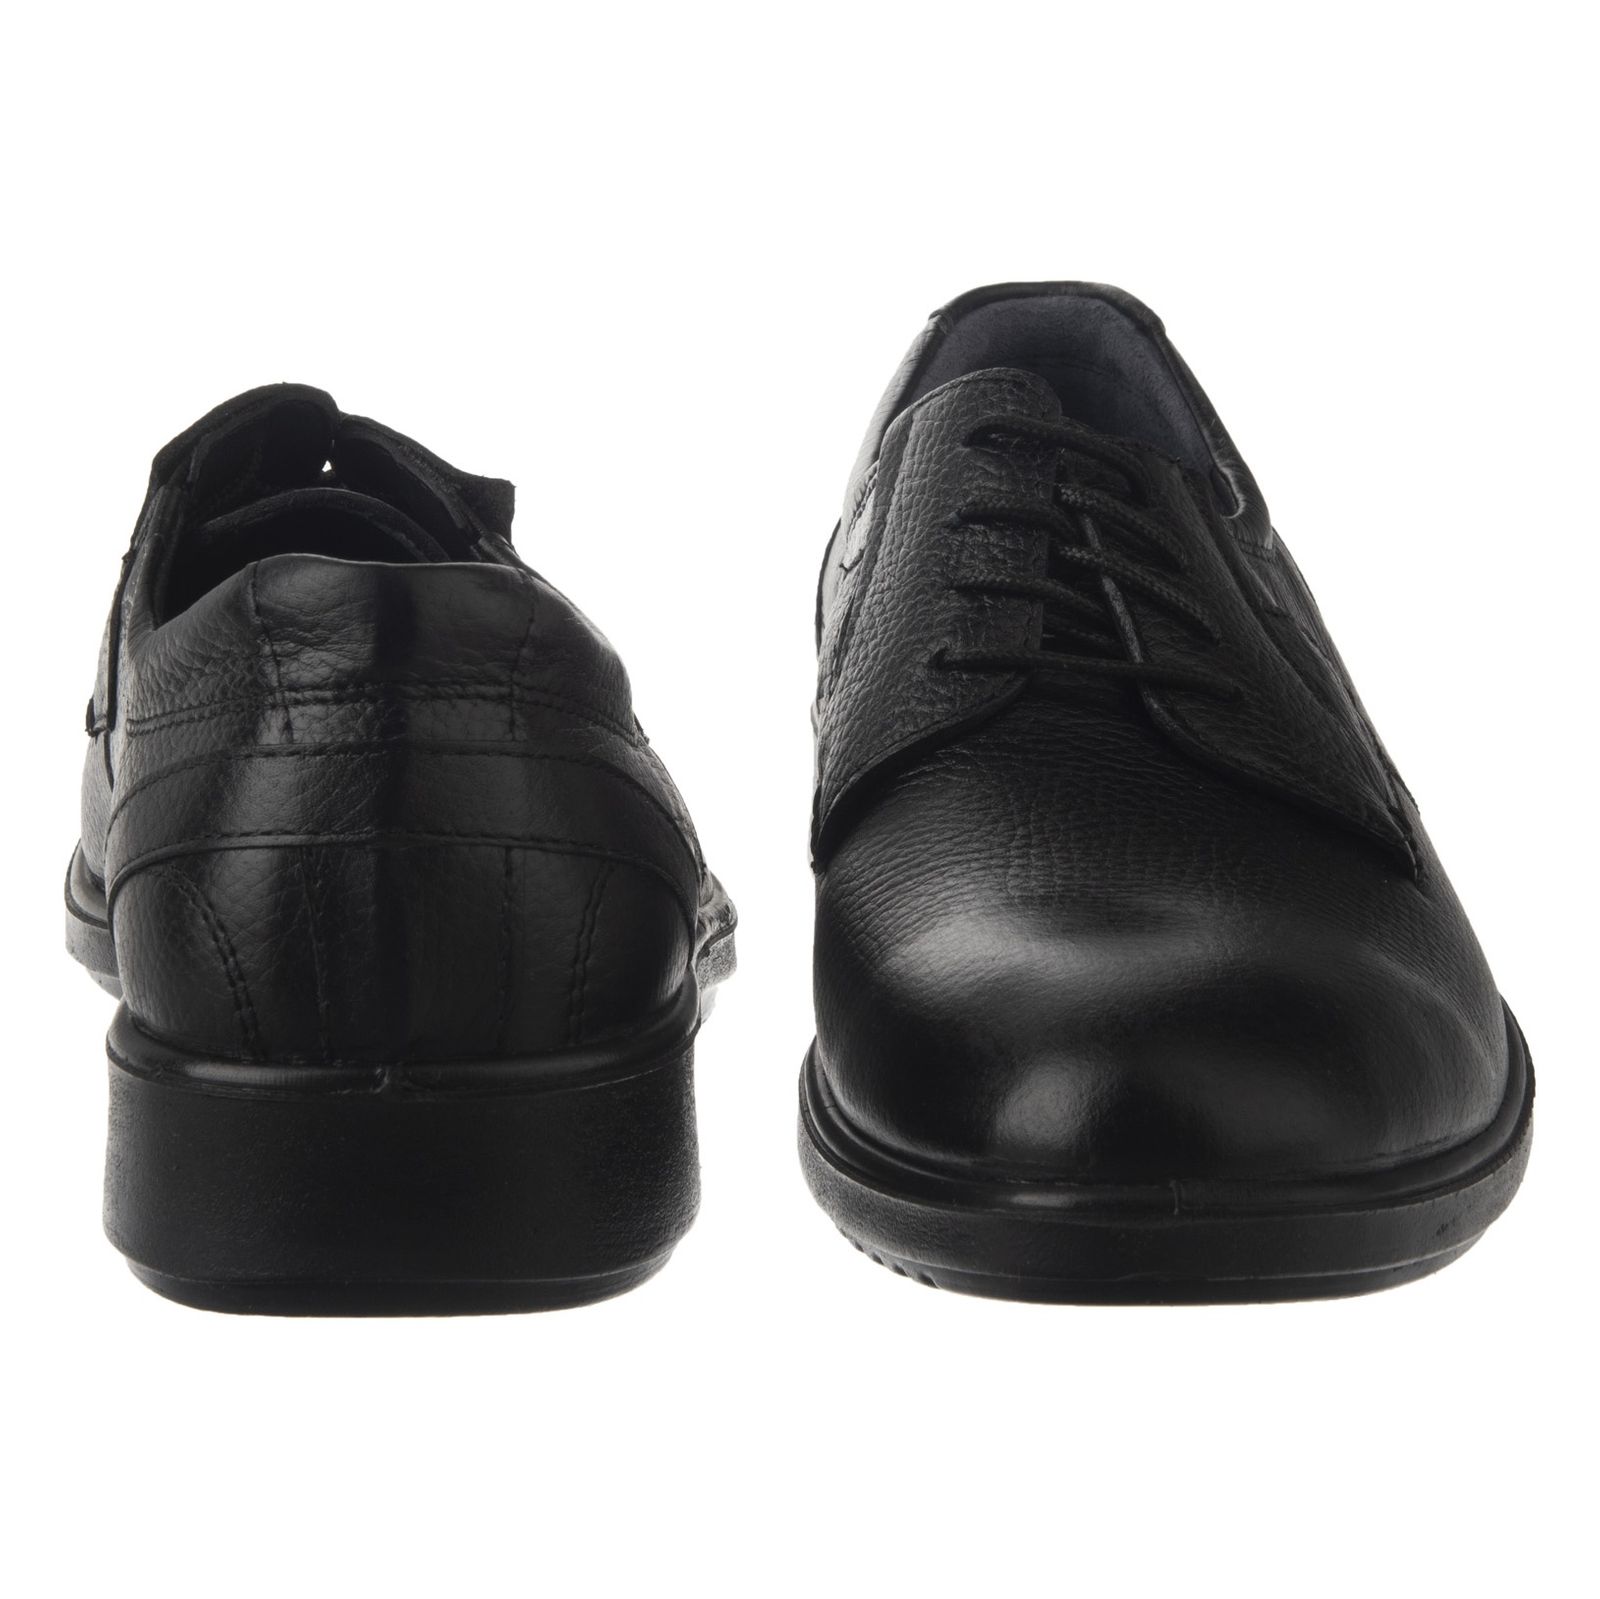 کفش روزمره مردانه شیفر مدل 7216B-101 - مشکی - 7